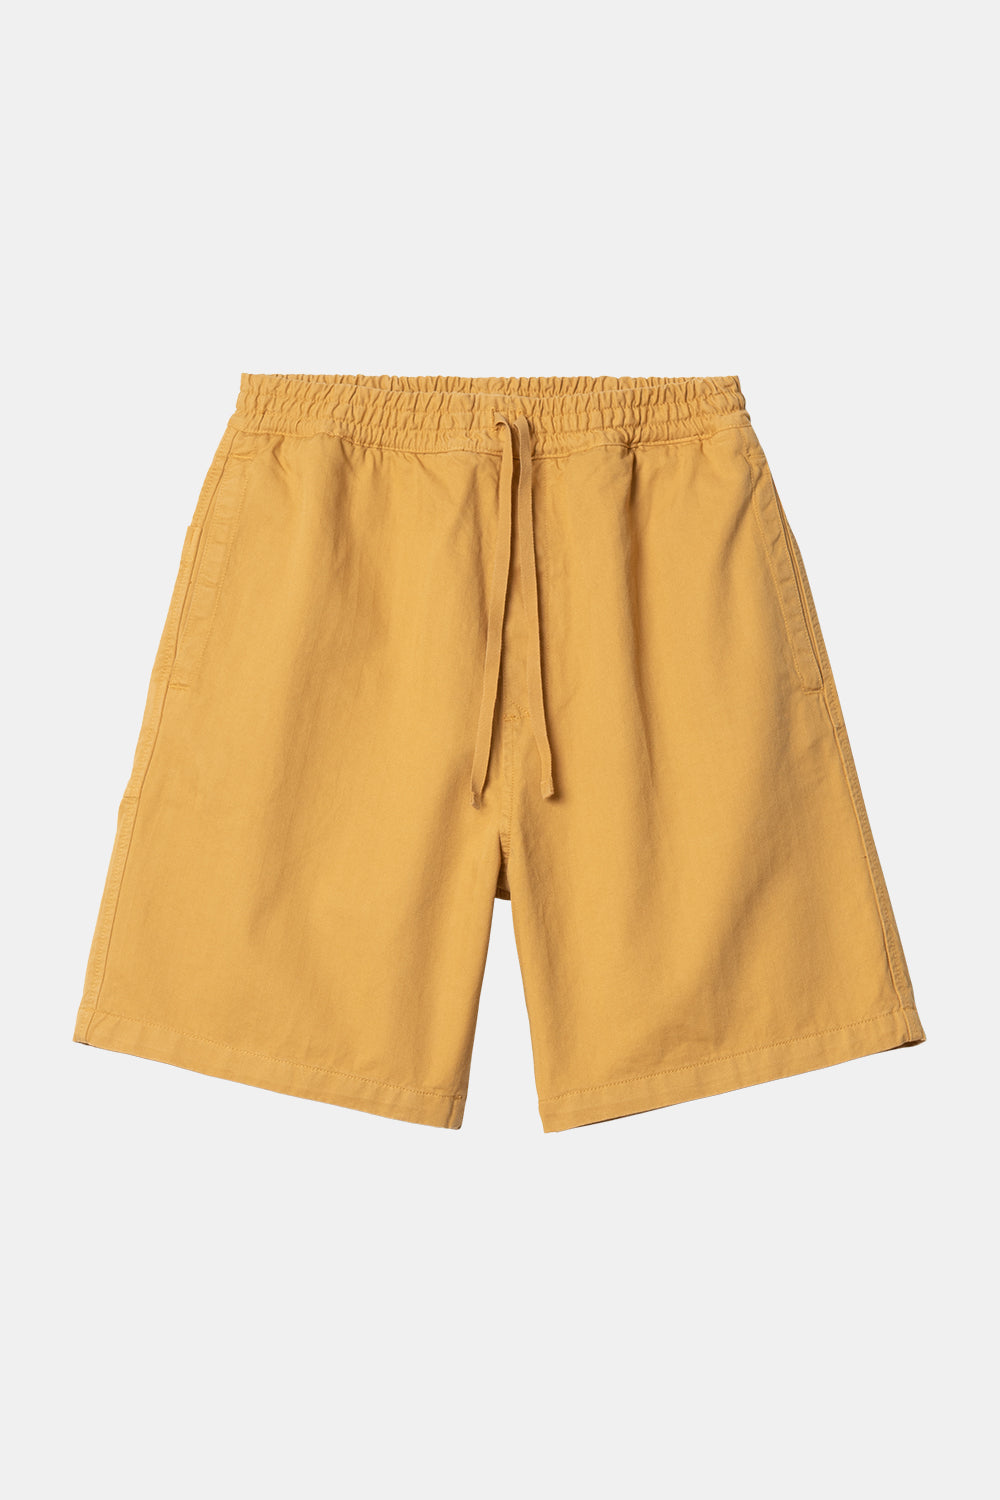 Carhartt WIP Rainer Garment Dyed Shorts (Sunray Yellow)